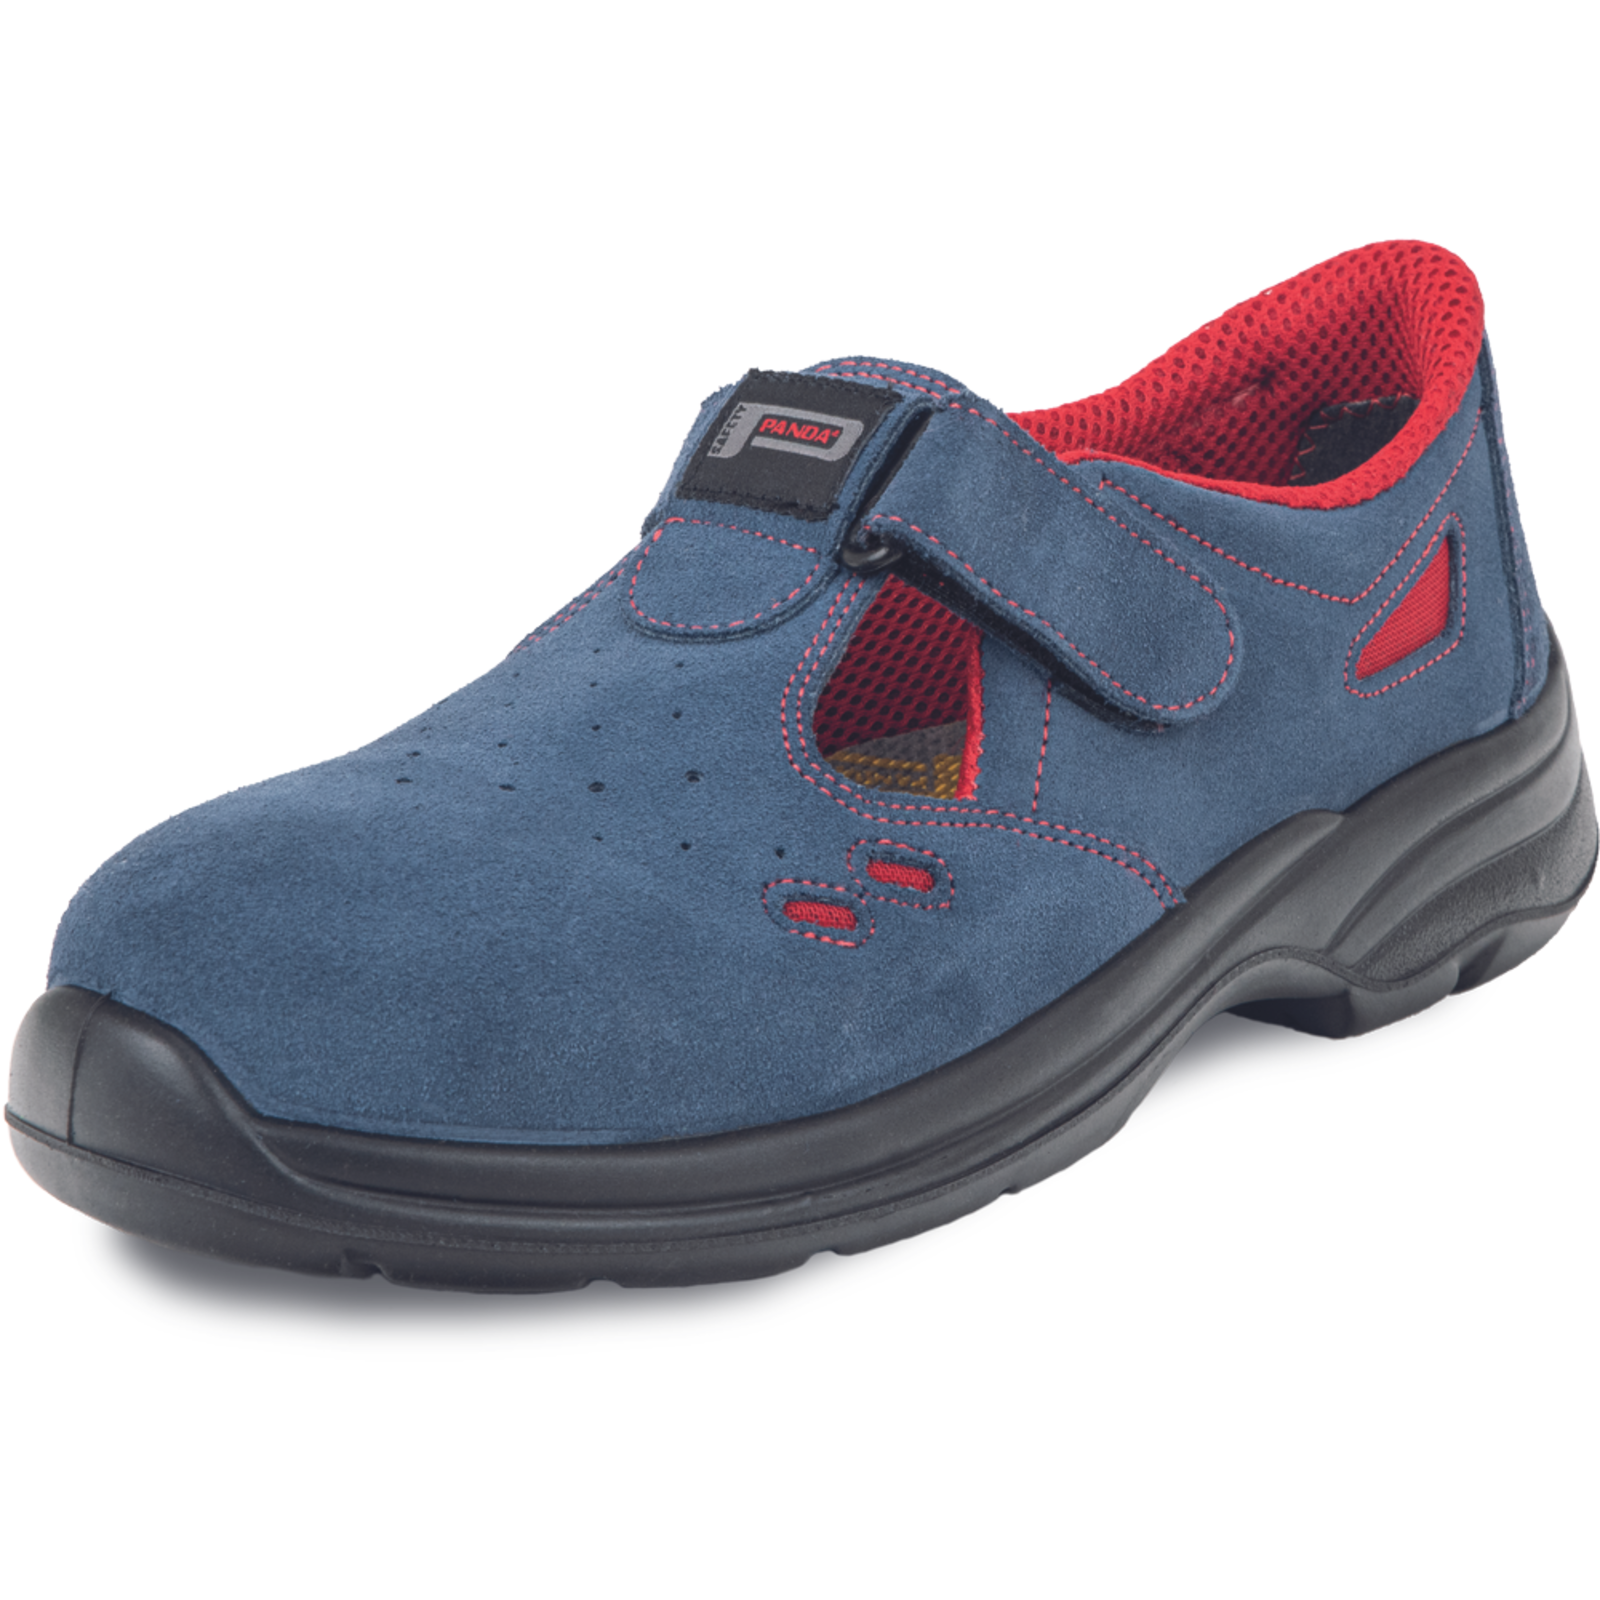 Pracovné bezpečnostné sandále Panda Ringo MF S1 SRC - veľkosť: 47, farba: modrá/červená